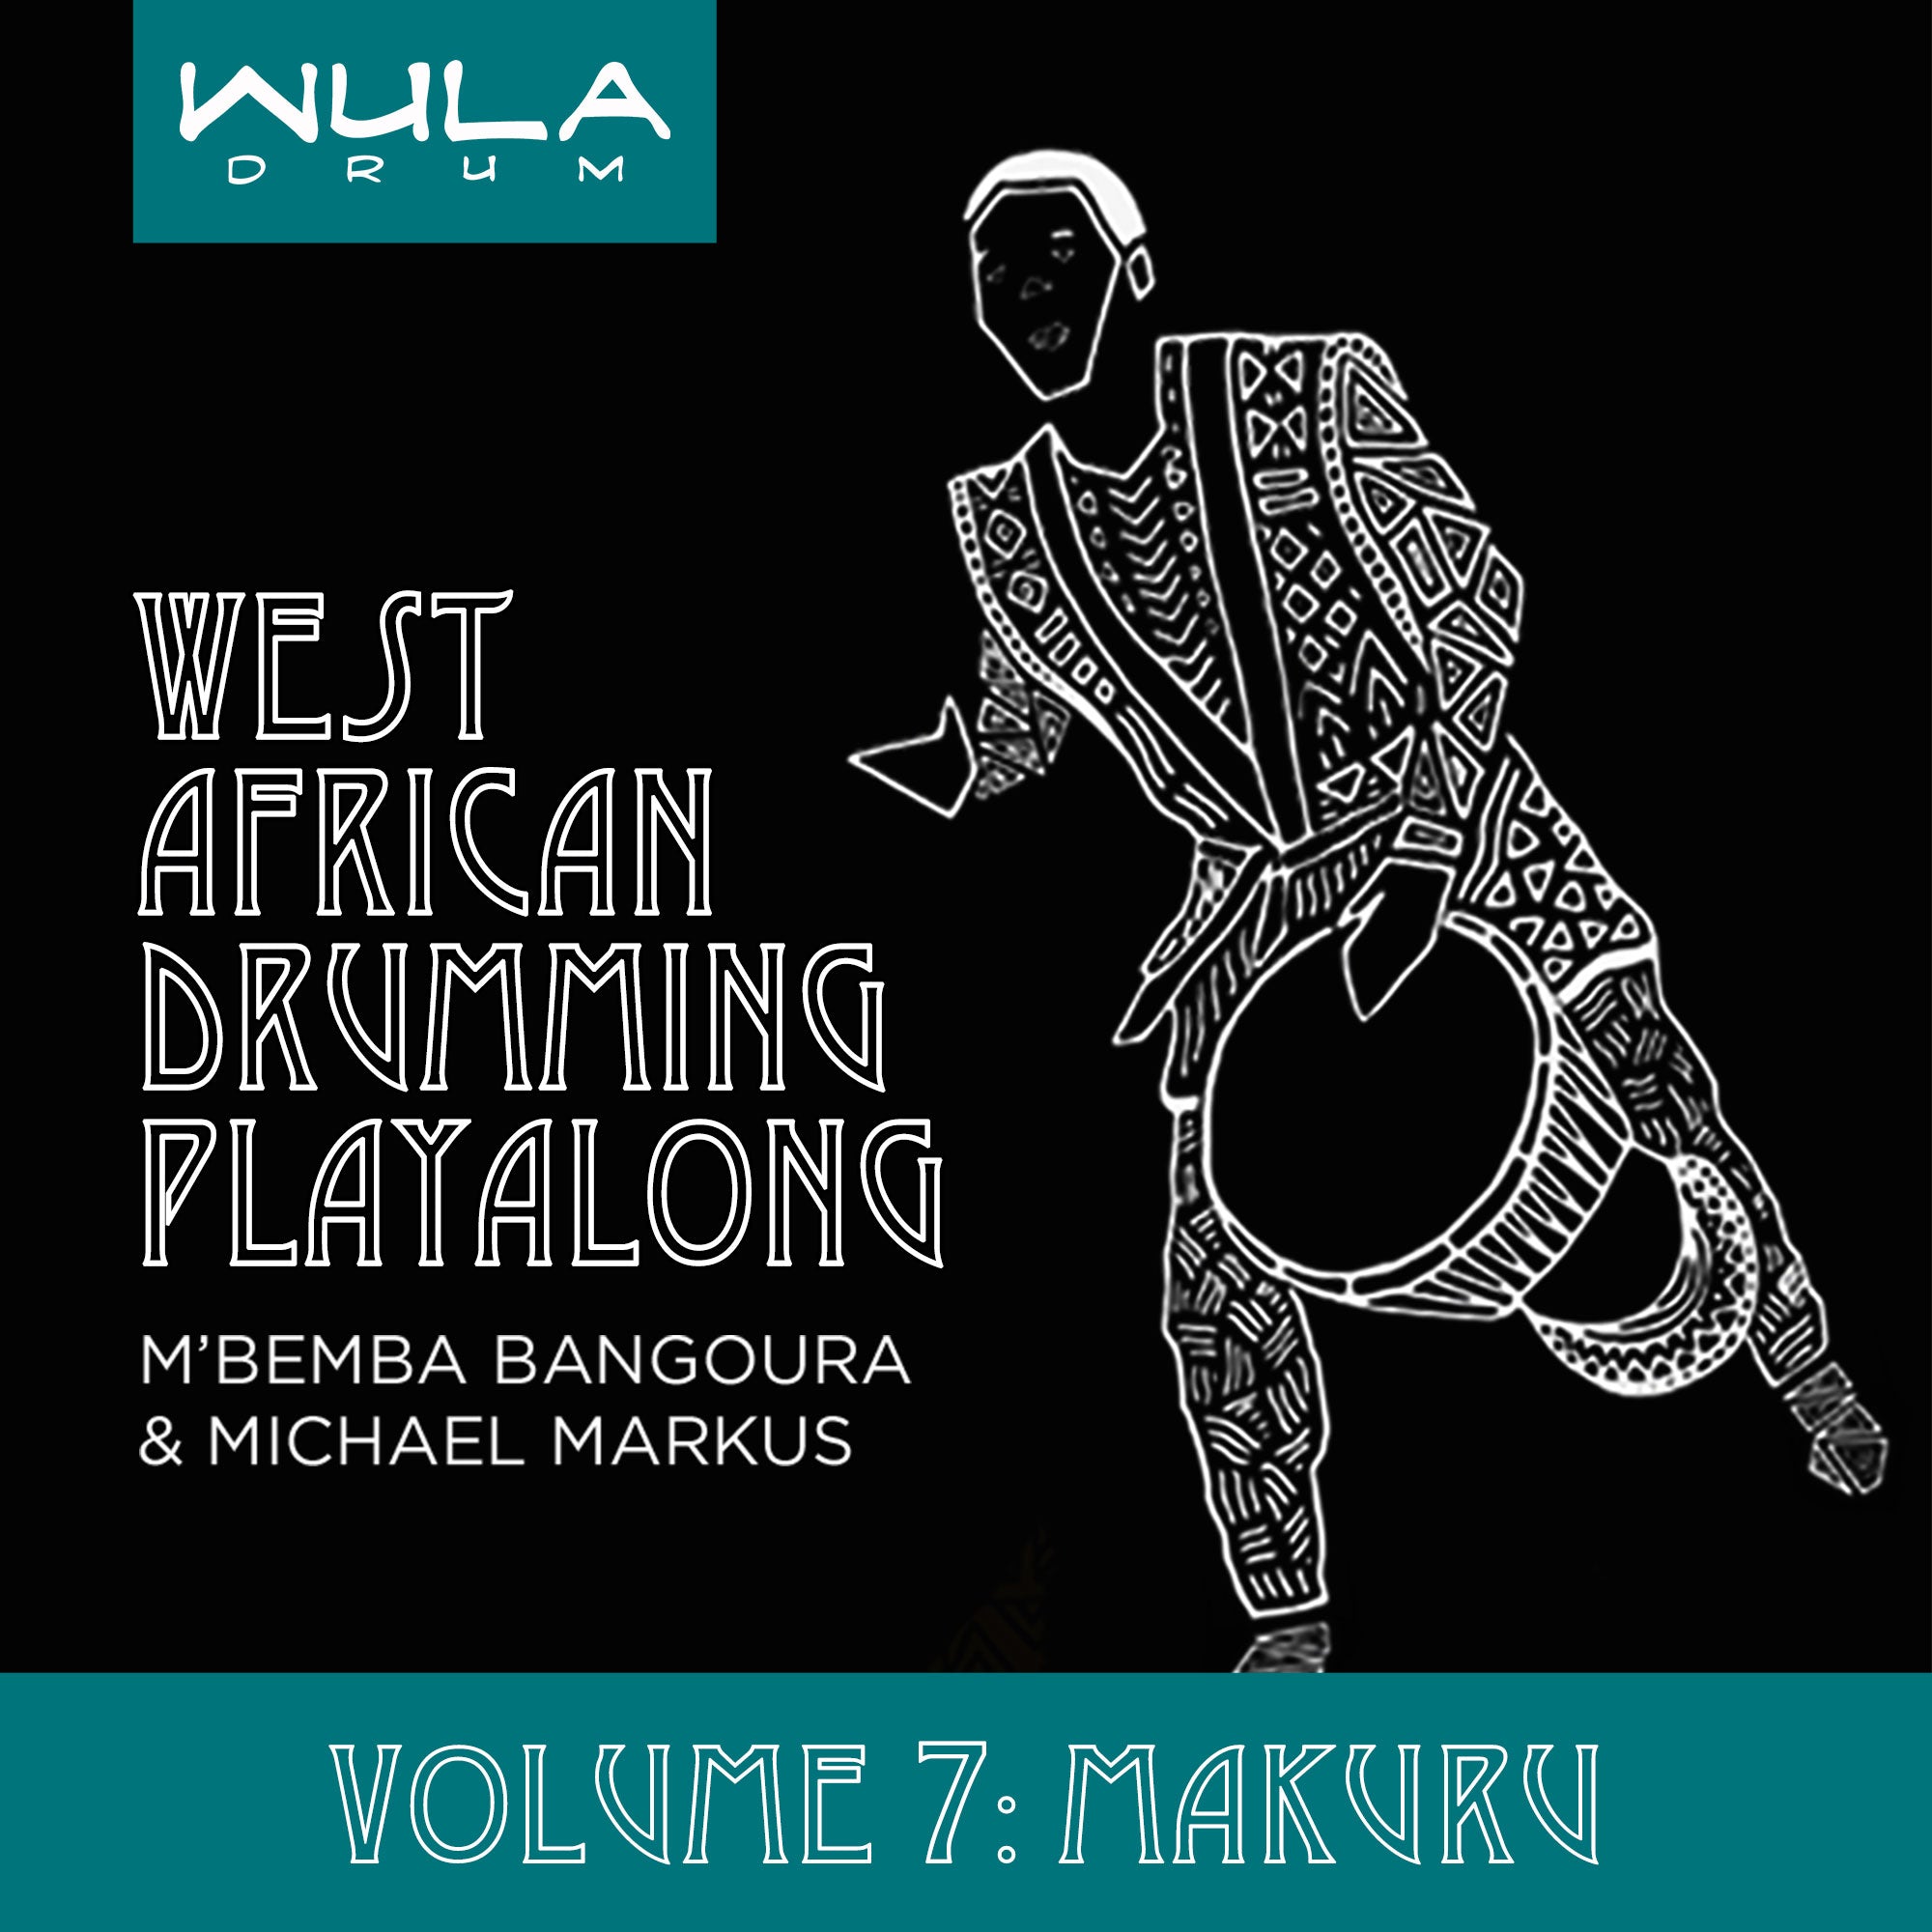 Wula Playalong Series Vol. 7 - Makuru (Wula Online)